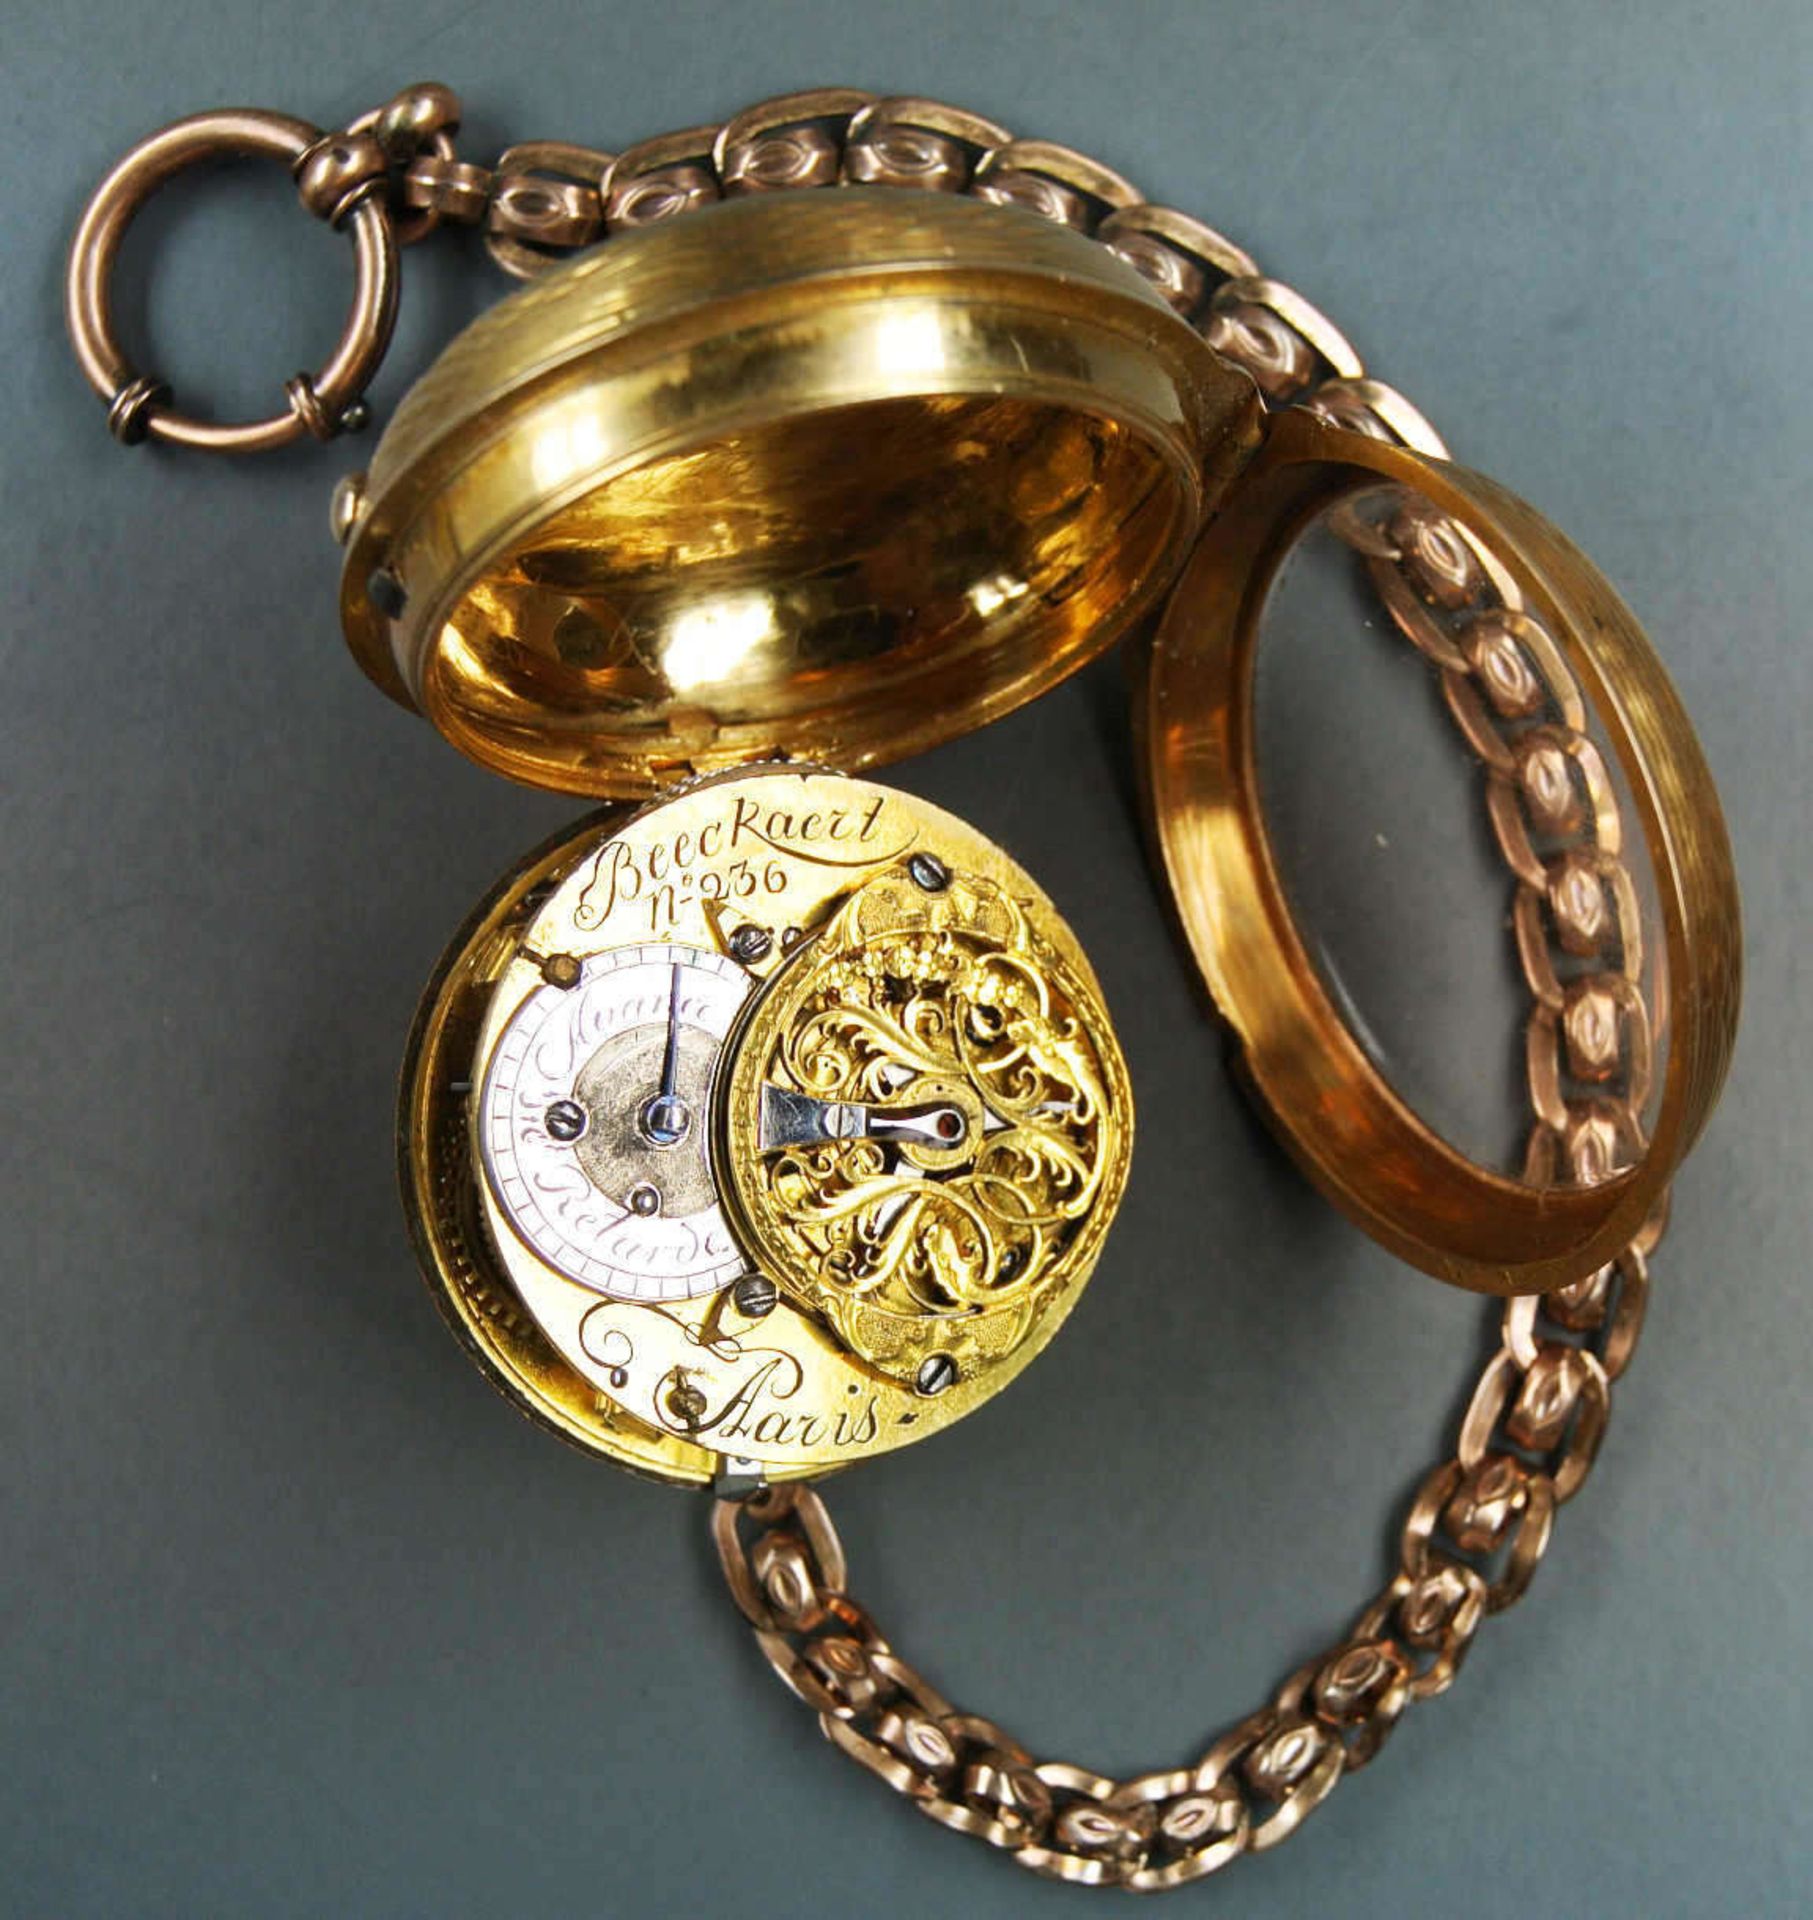 Spindel - Taschenuhr von Jean Francois Beeckaert Paris, No. 236. Um 1800. Gold 750. Emaill - - Bild 7 aus 12